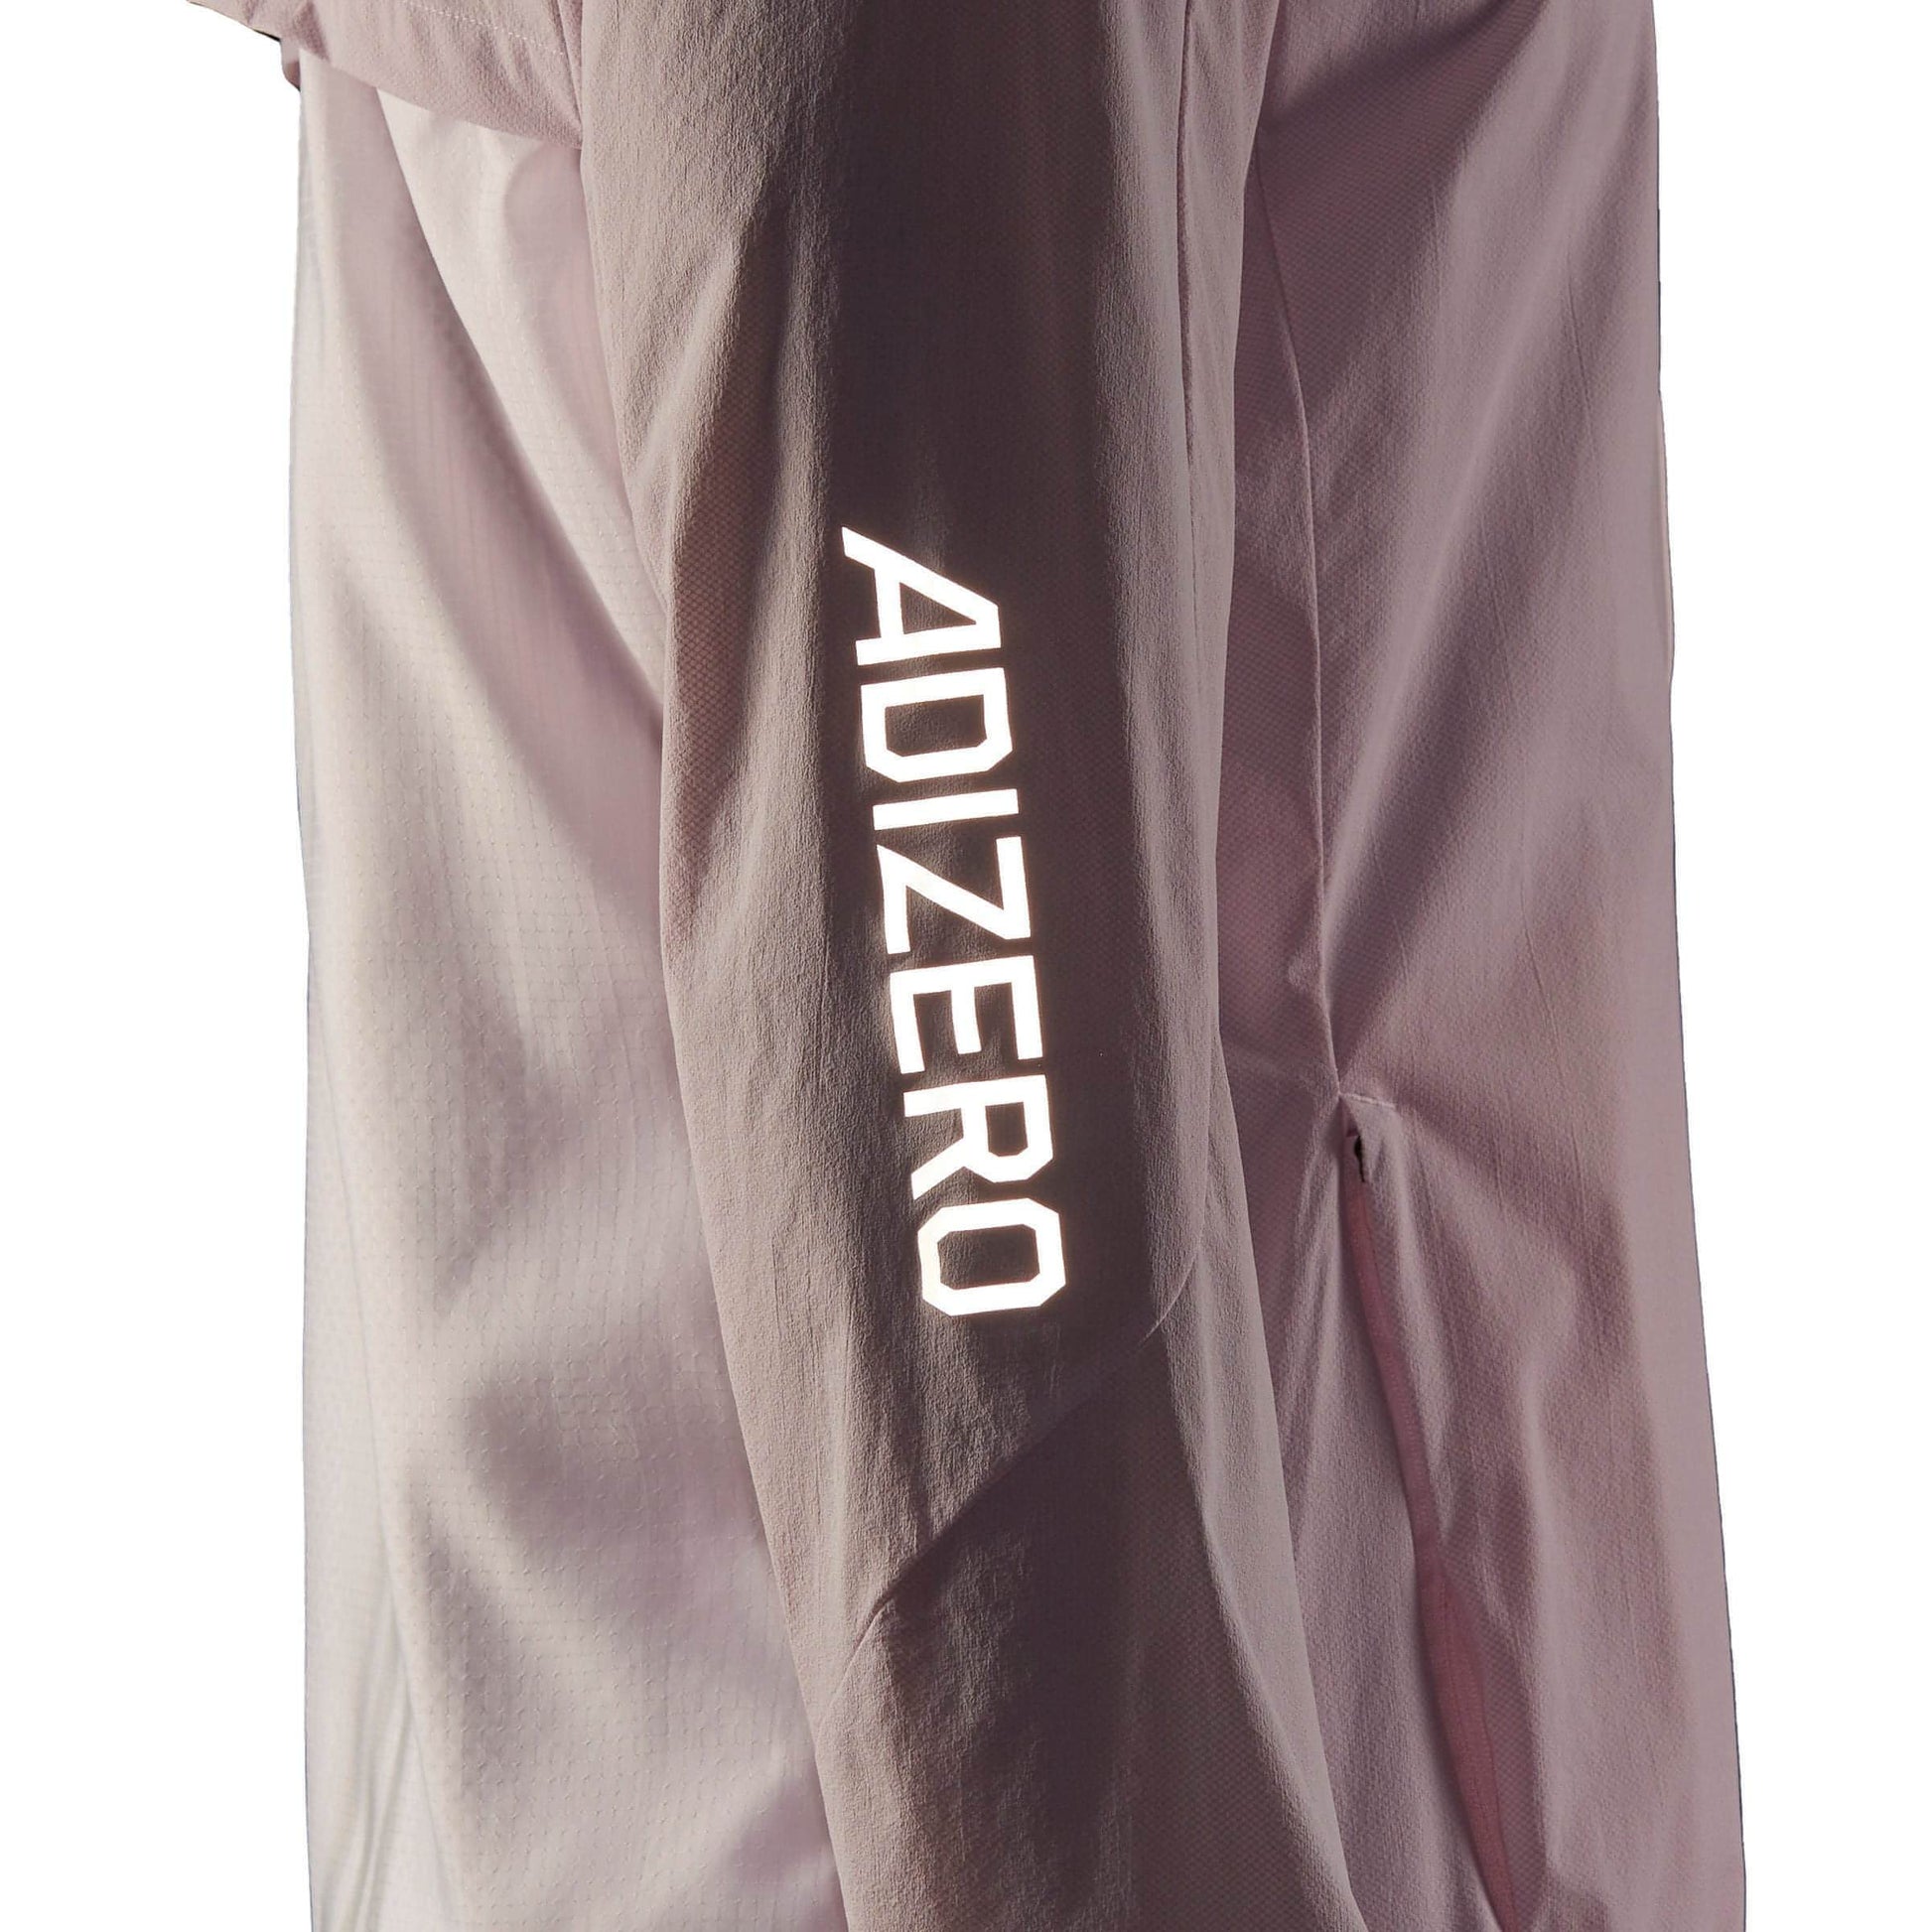 Adidas Adizero Marathon Jacket Hf9307 Details